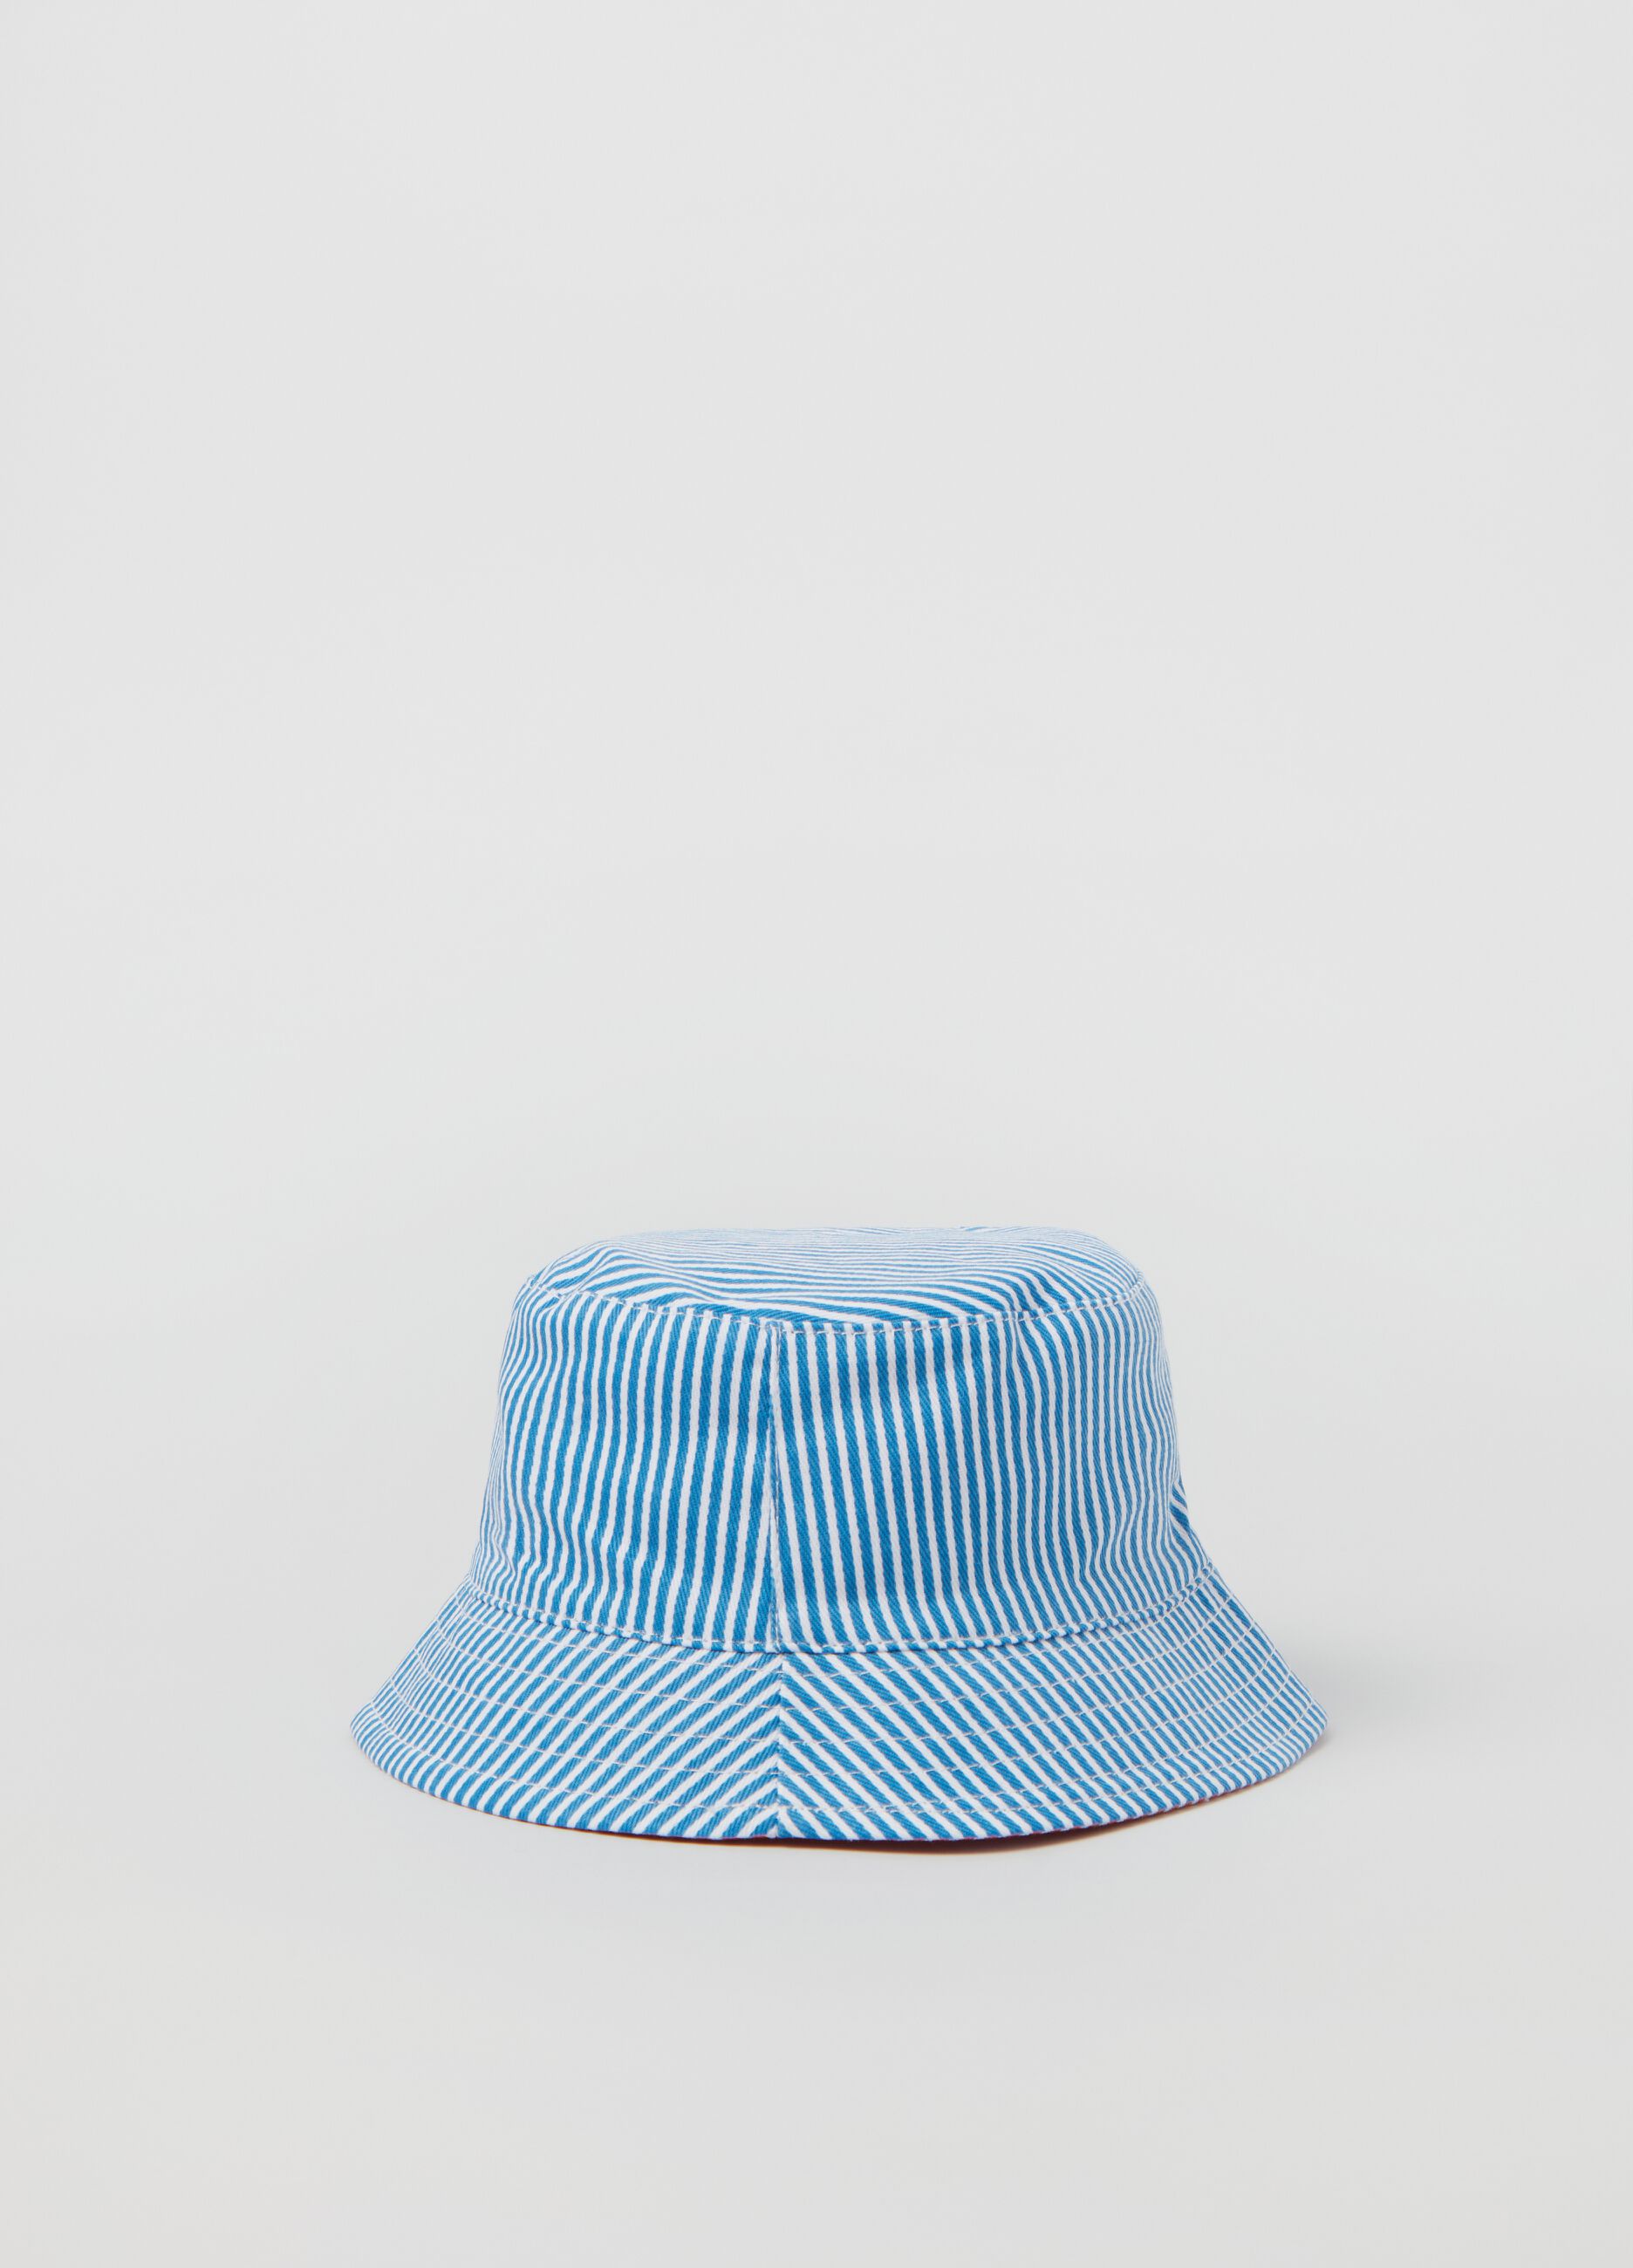 Reversible fishing hat